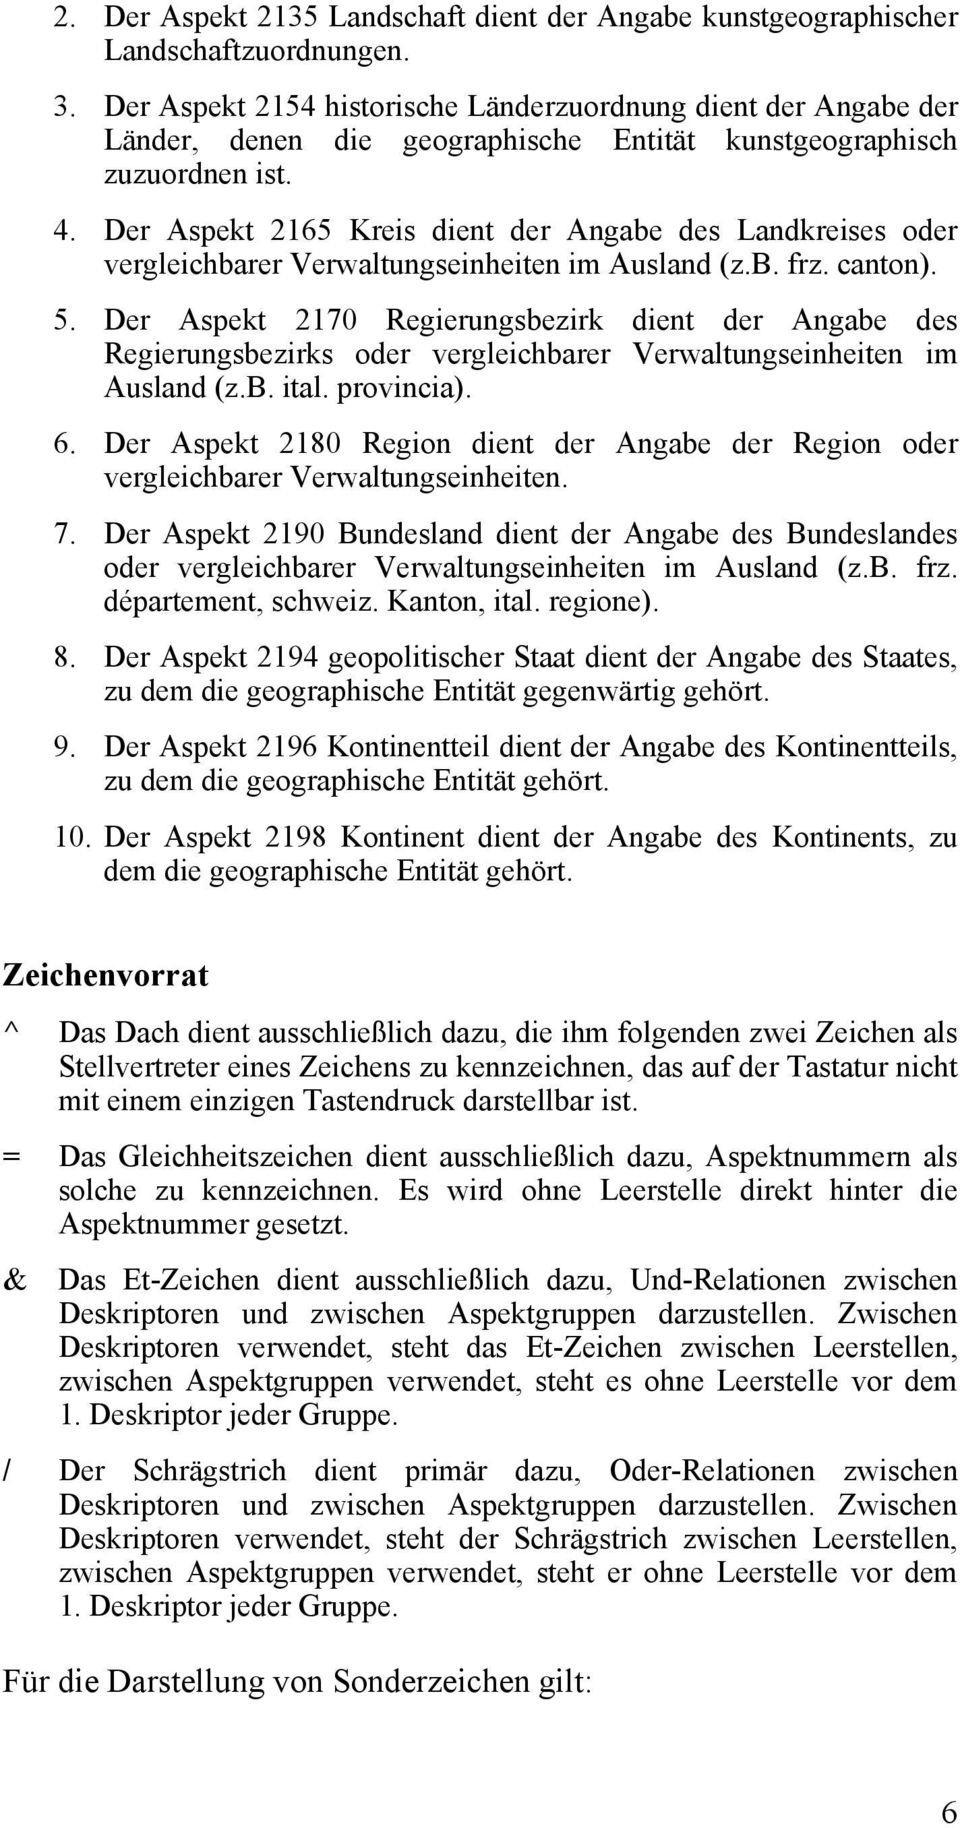 Der Aspekt 2165 Kreis dient der Angabe des Landkreises oder vergleichbarer Verwaltungseinheiten im Ausland (z.b. frz. canton). 5.